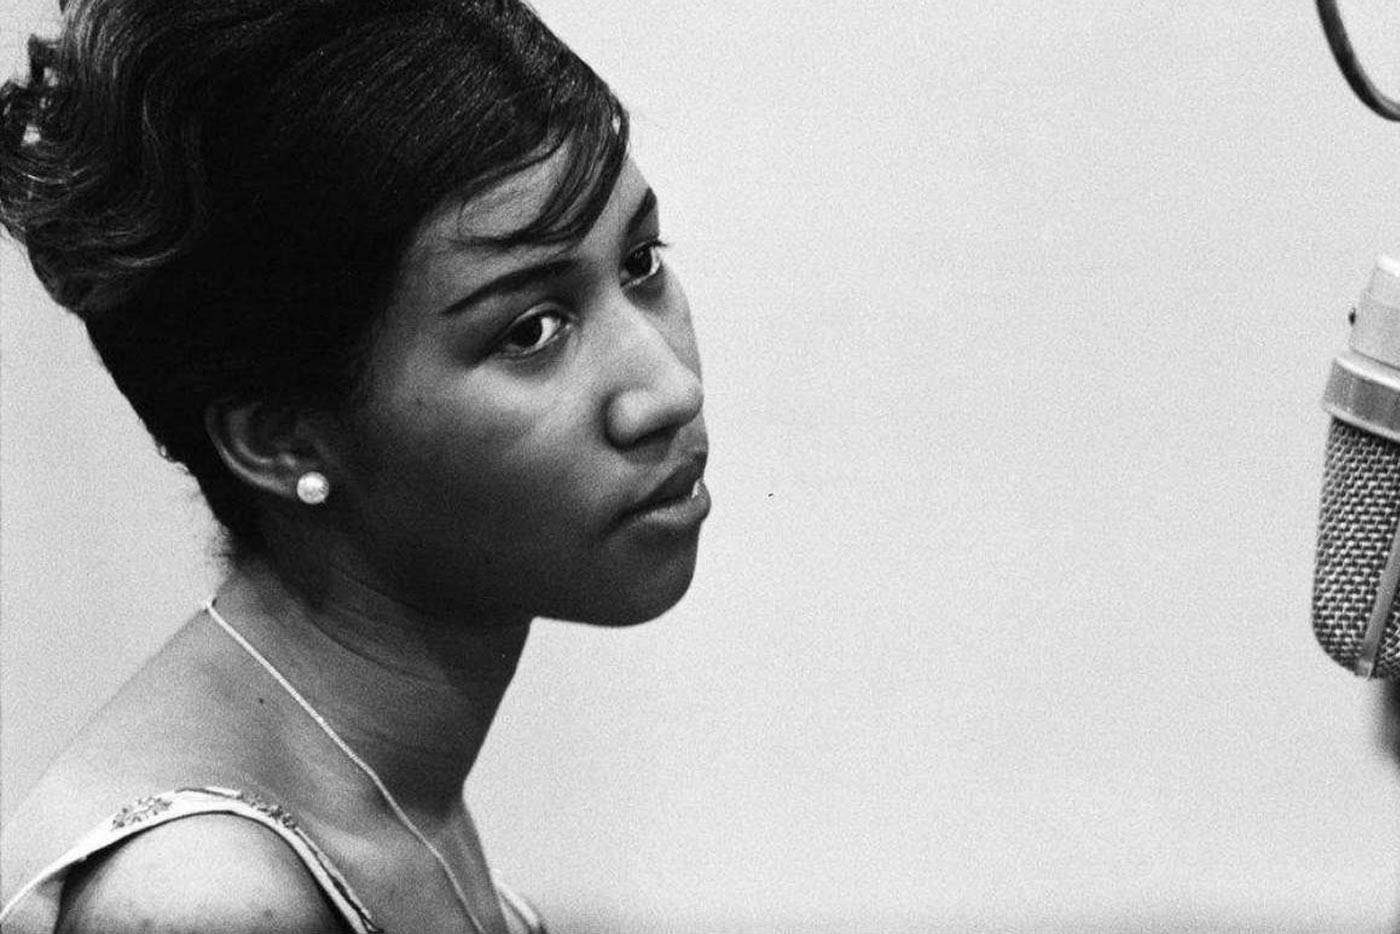 Un documental de Aretha Franklin filmado hace 46 años sale a la luz